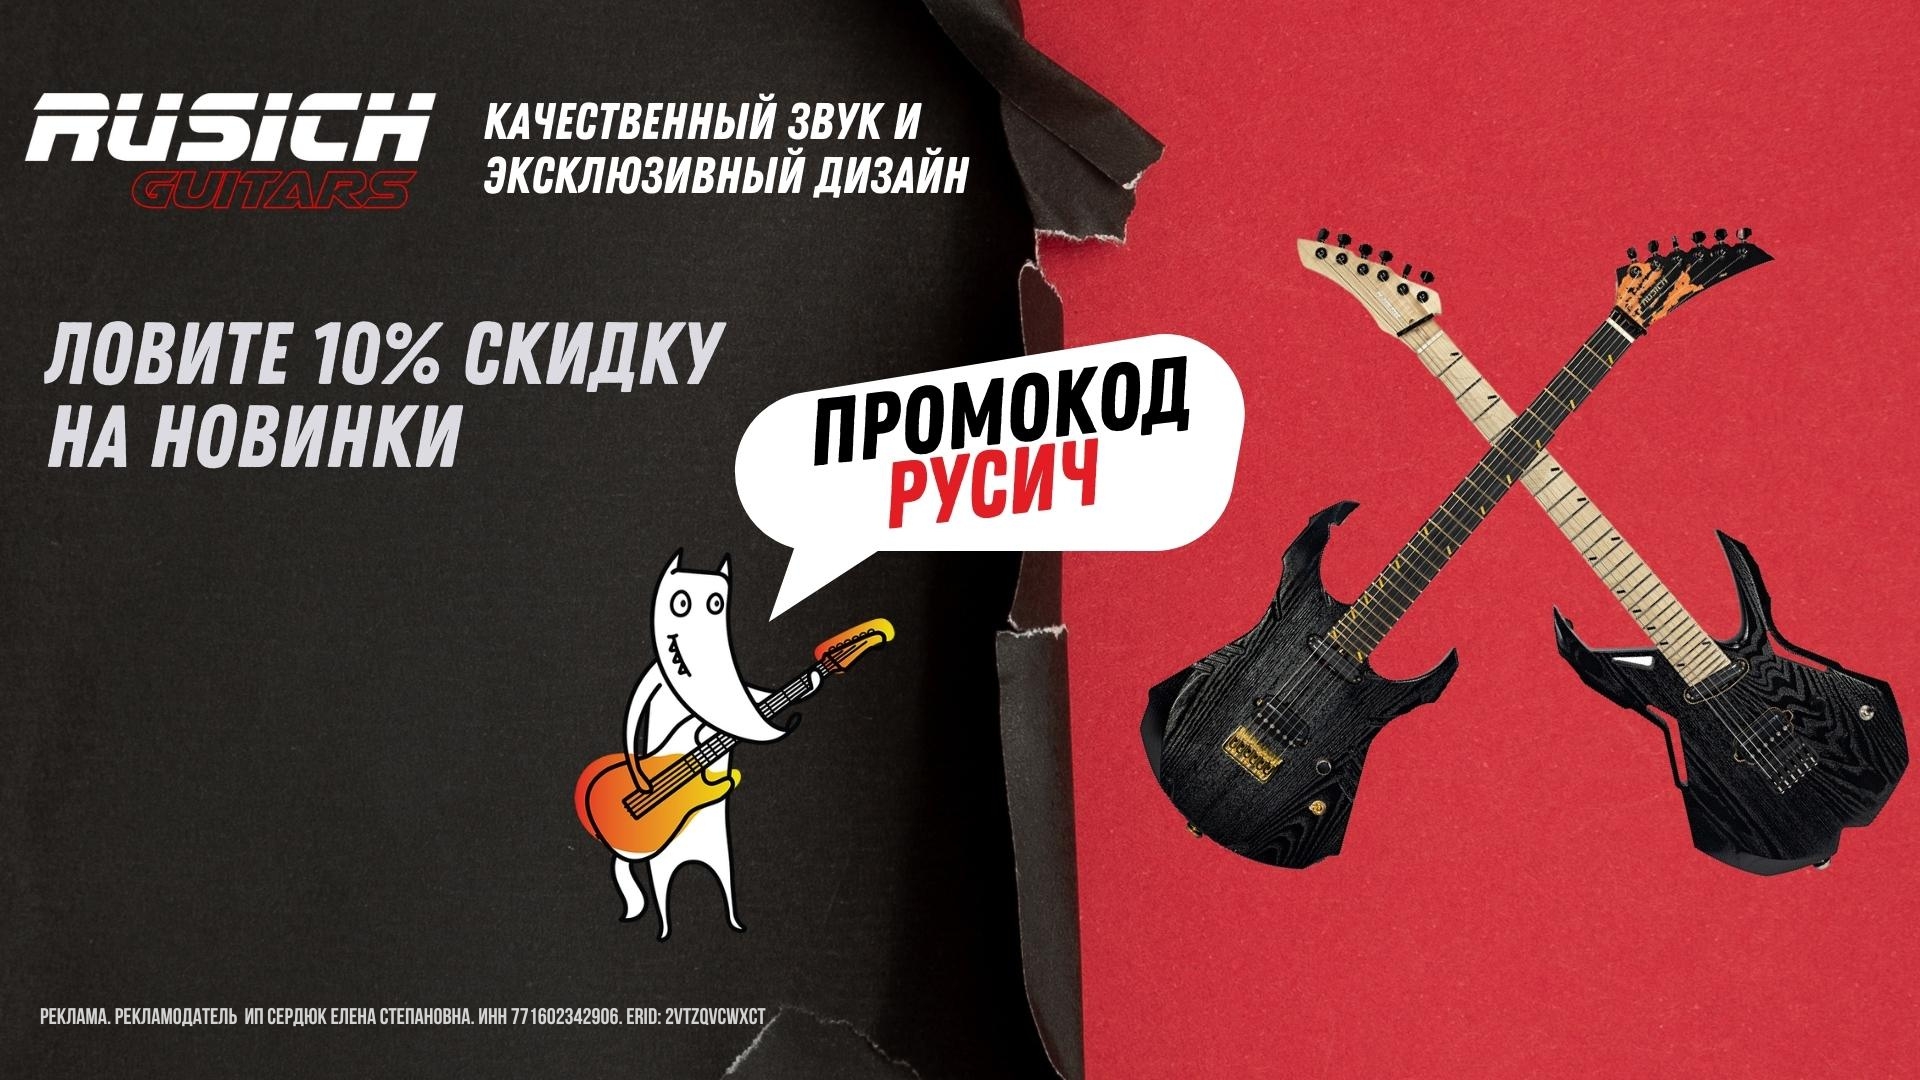 Rusich Guitars - 10% скидка